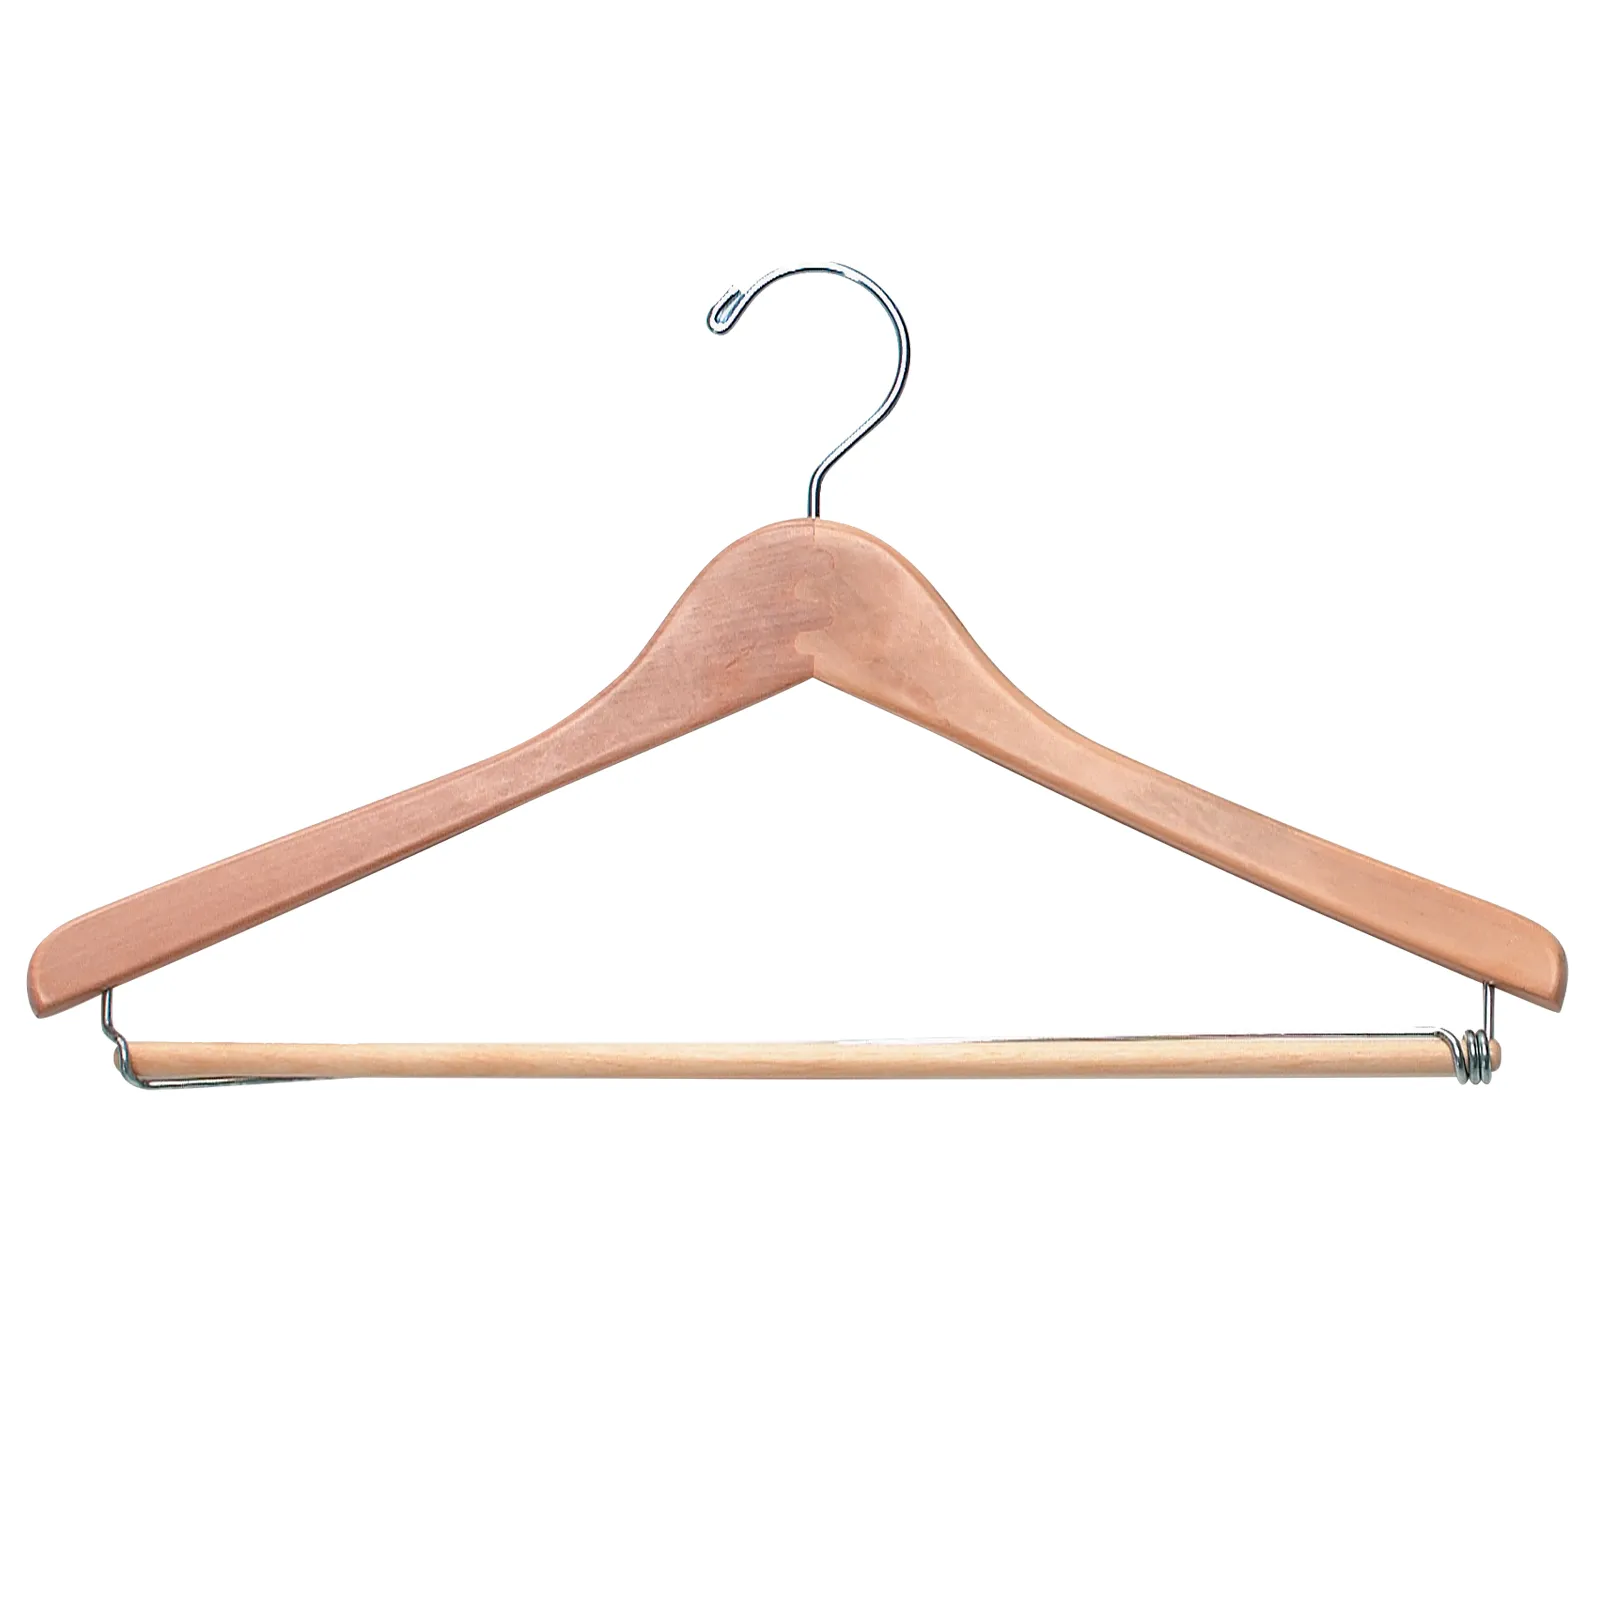 HG_Wooden_Uniform_Hanger_1600x1600